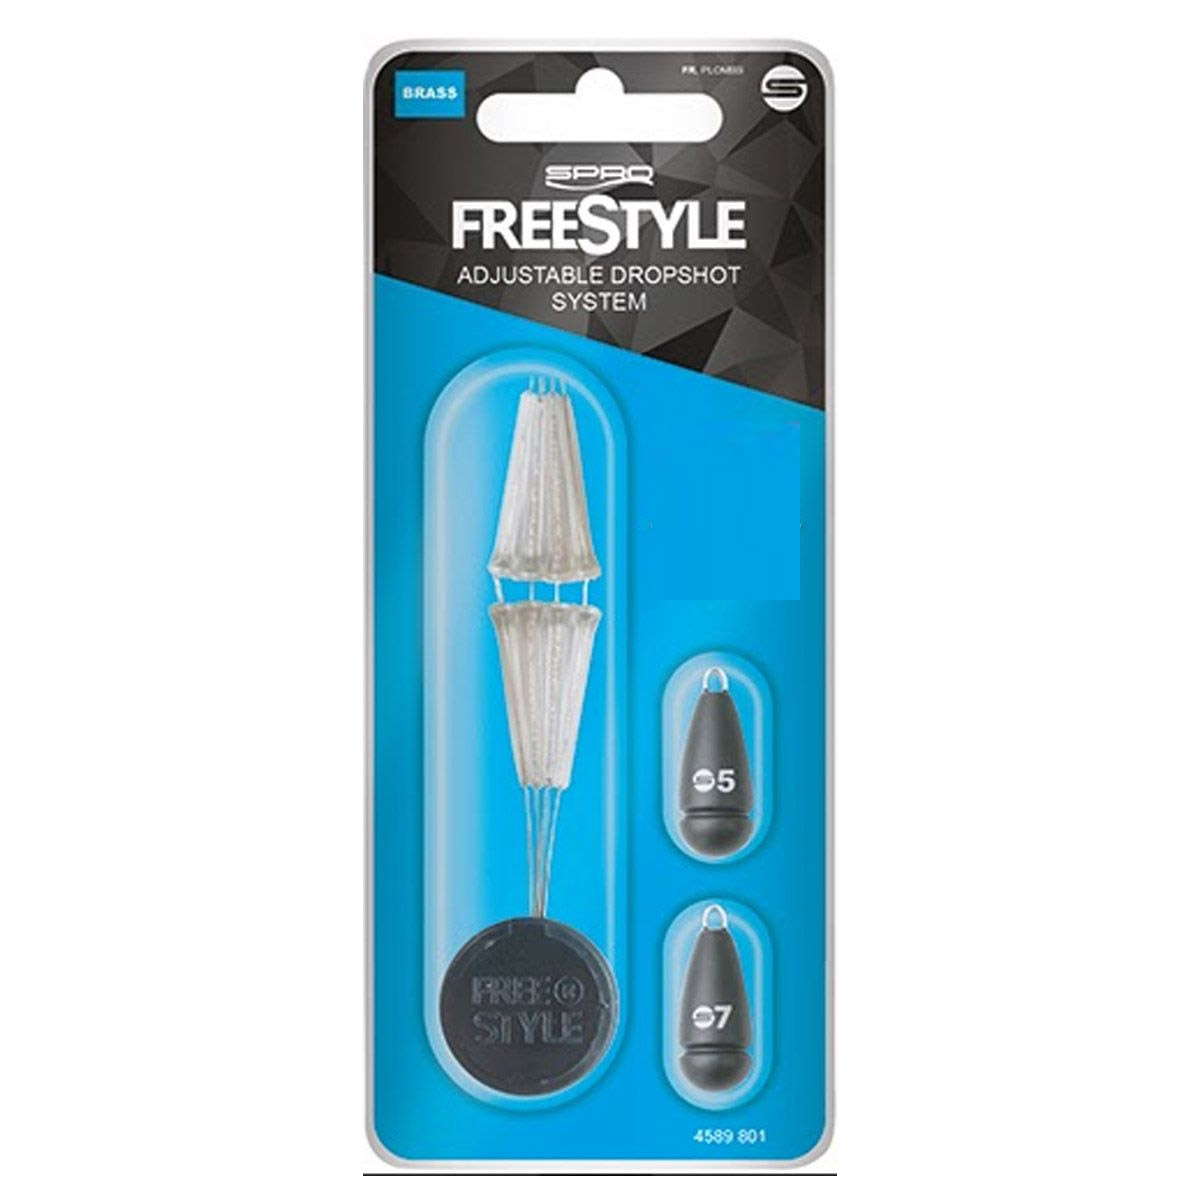 Spro Freestyle Adjustable Dropshot System 7+10 Gram